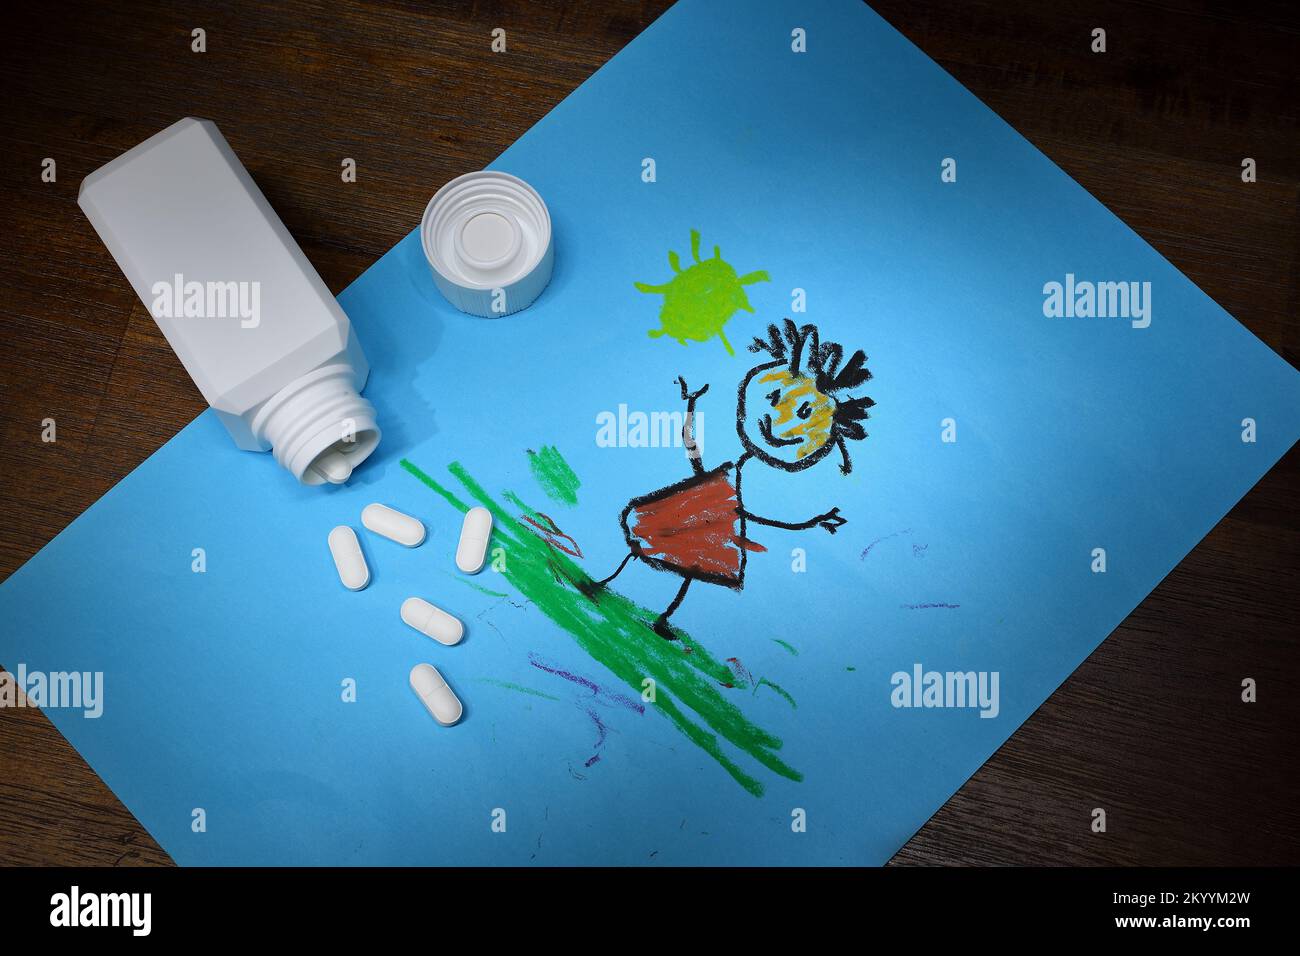 Scena di un contenitore aperto di farmaci su un’opera d’arte di un bambino che illustra i pericoli delle droghe non presidiate in presenza di bambini piccoli Foto Stock